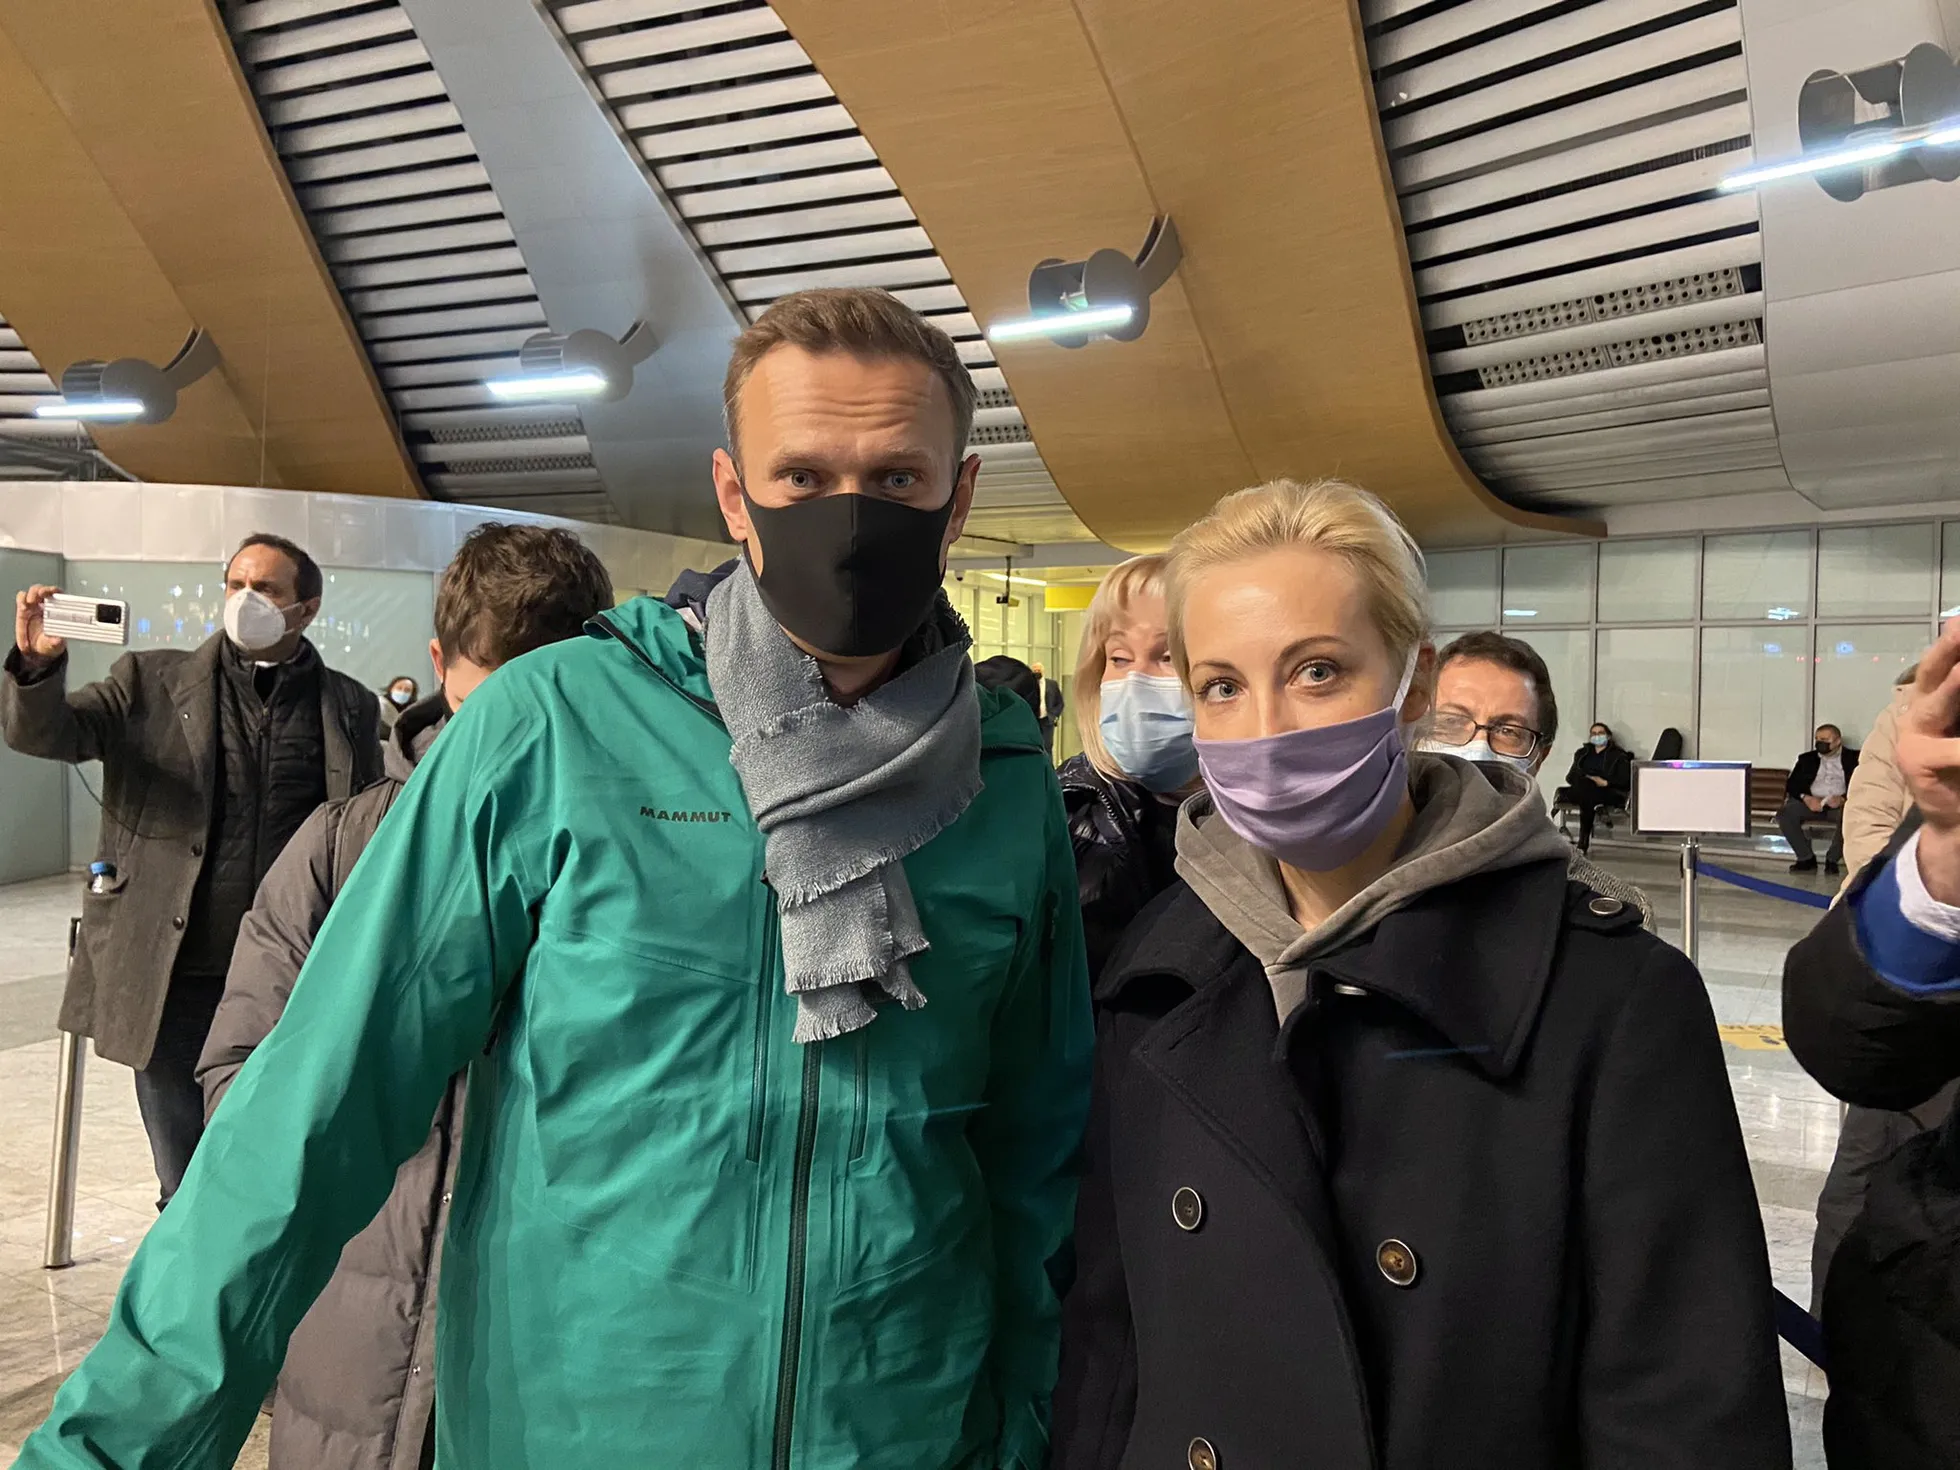 2021.a. Aleksei Navalnõi enne kinnipidamist lennuväljal.